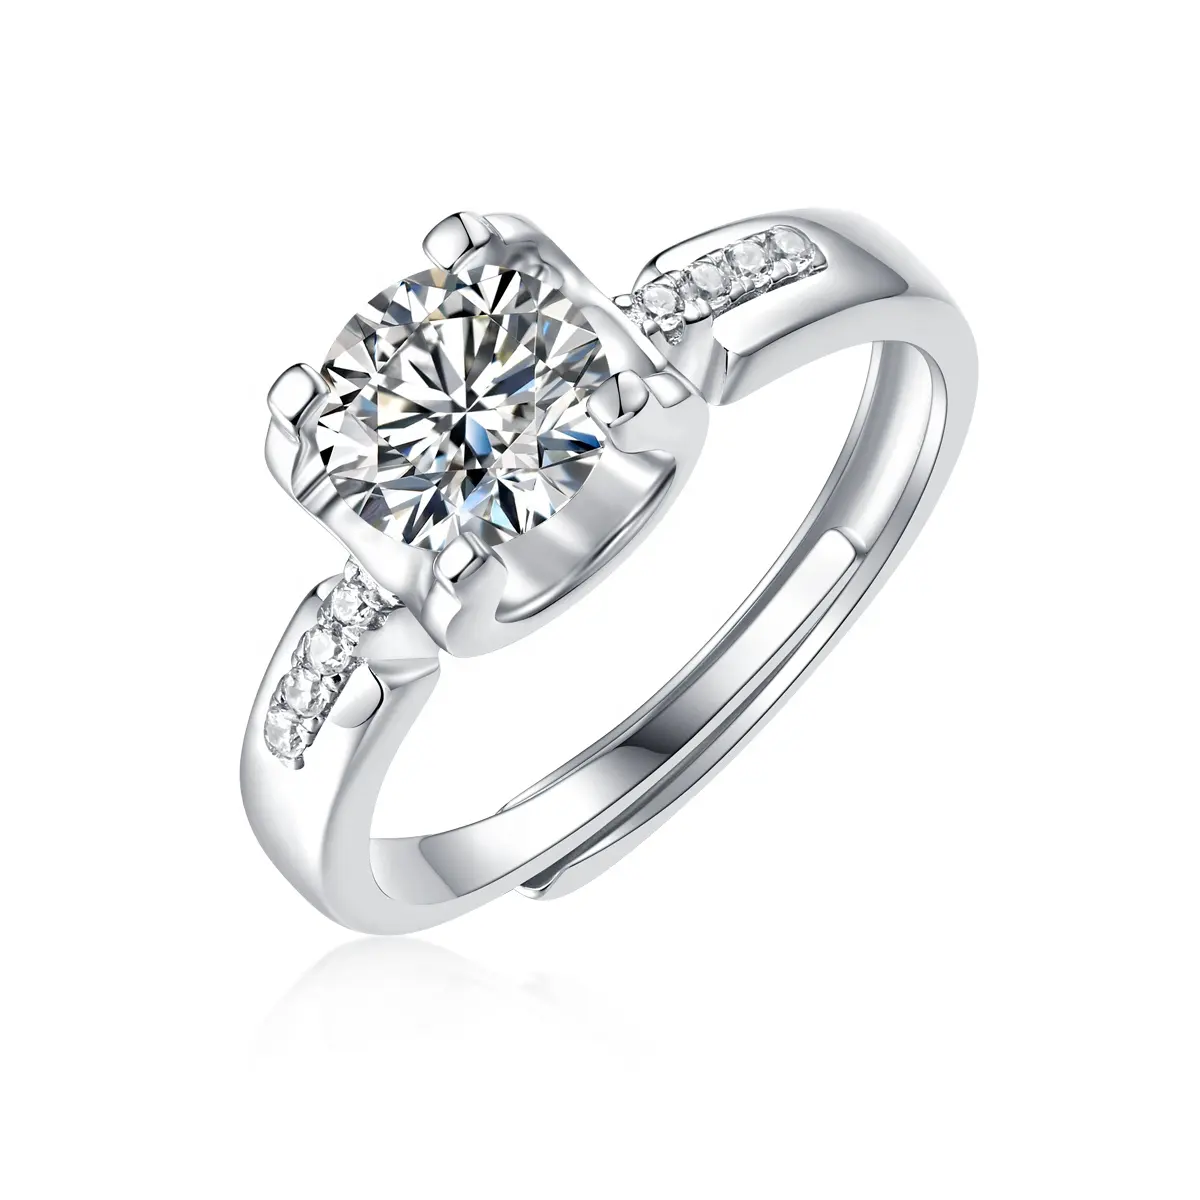 Scene Full Maatwerk Trouwringen Voor Vrouwen Verloving Echt 925 Sterling Zilveren Diamant Verstelbare Ringen